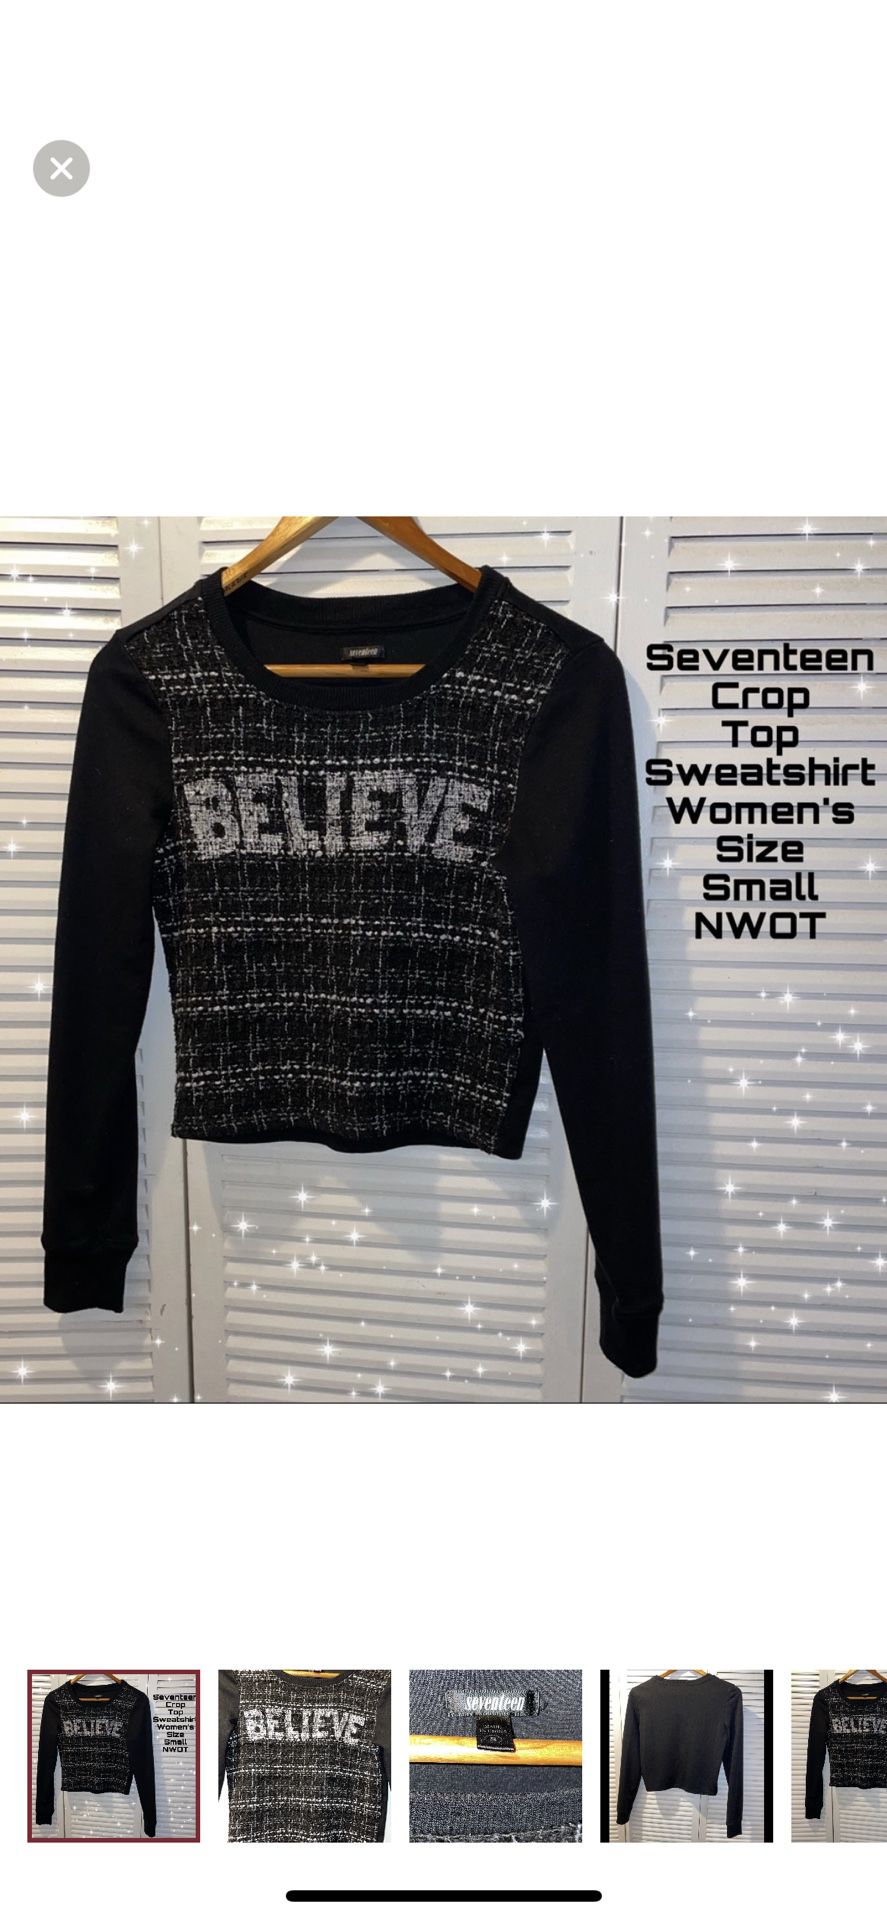 Seventeen Tweed Front Crop Top Long Sleeve "Believe" Sweatshirt Size Small